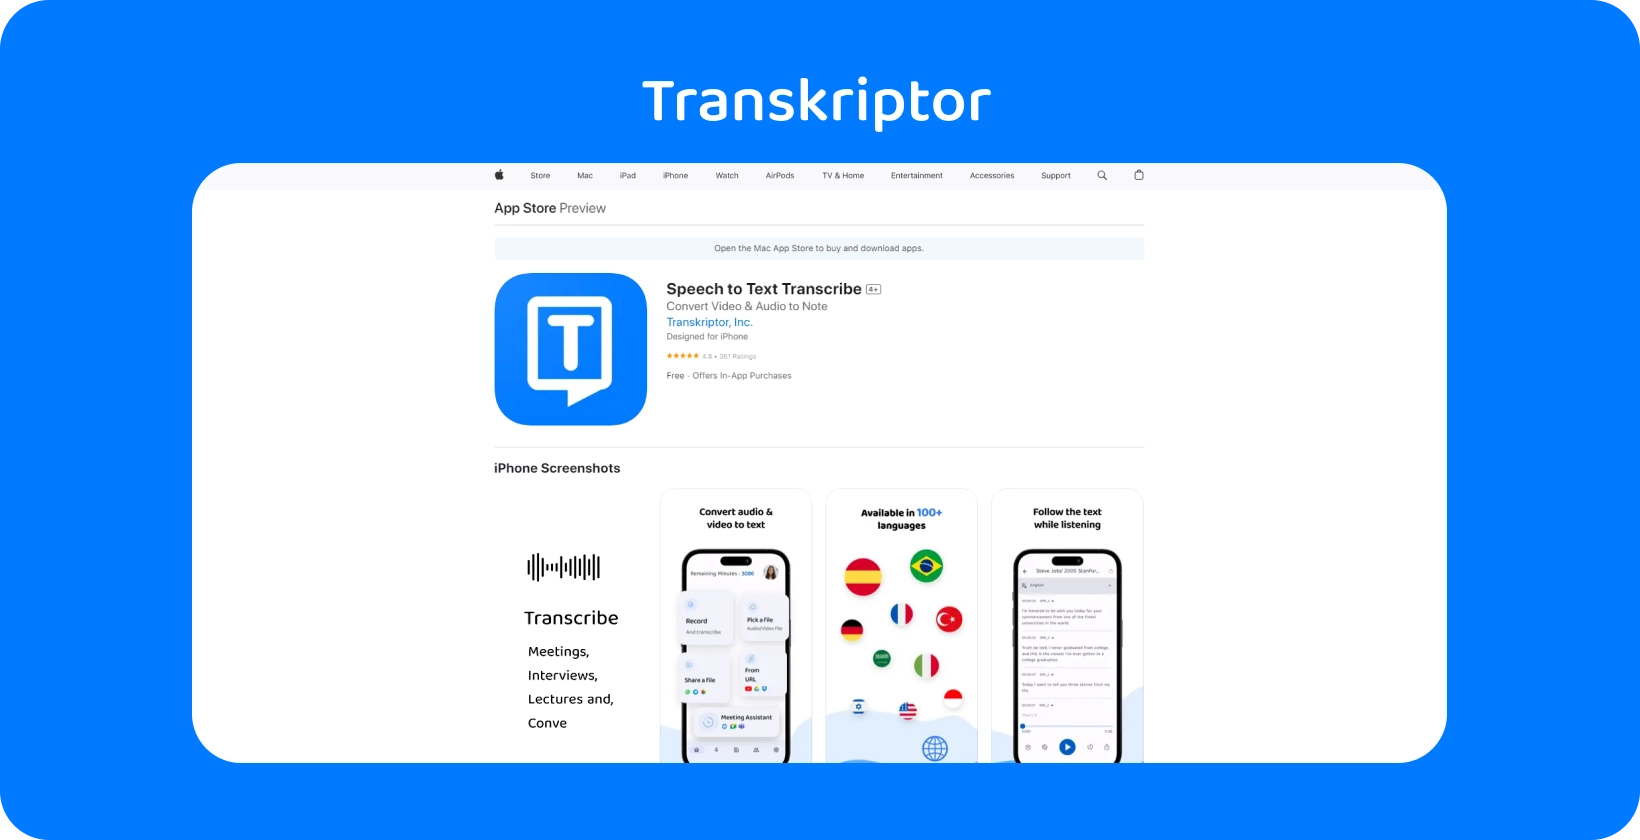 Die Transkriptor-Anwendung wird auf dem iPhone vorgestellt und hebt ihre Sprach-zu-Text-Transkriptionsfunktionen hervor.